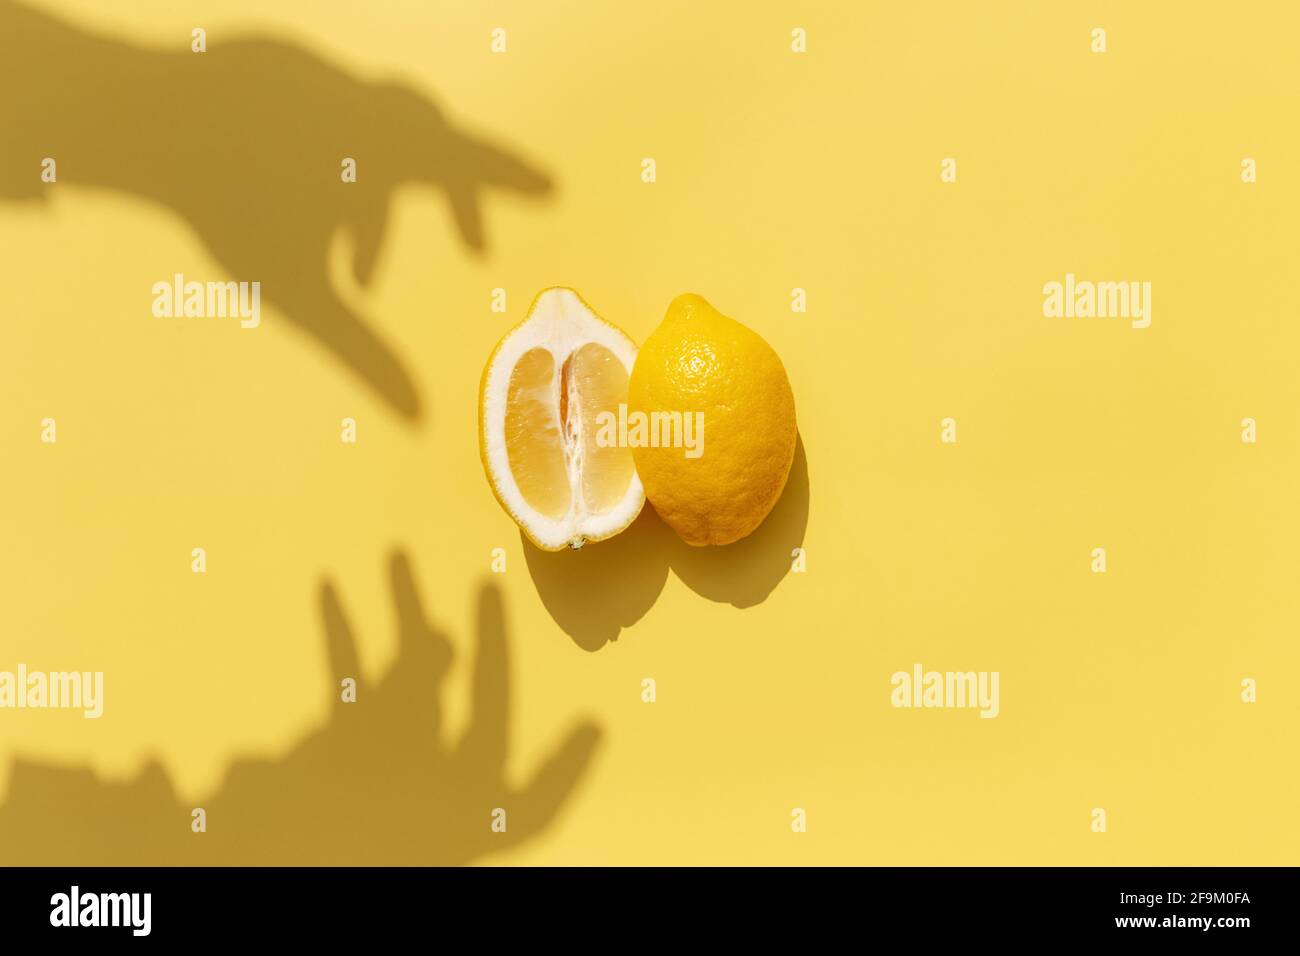 Deux demi-morceaux de citron avec ombre de la main sur fond jaune. Concept de saine alimentation, de voyage ou de vacances Banque D'Images